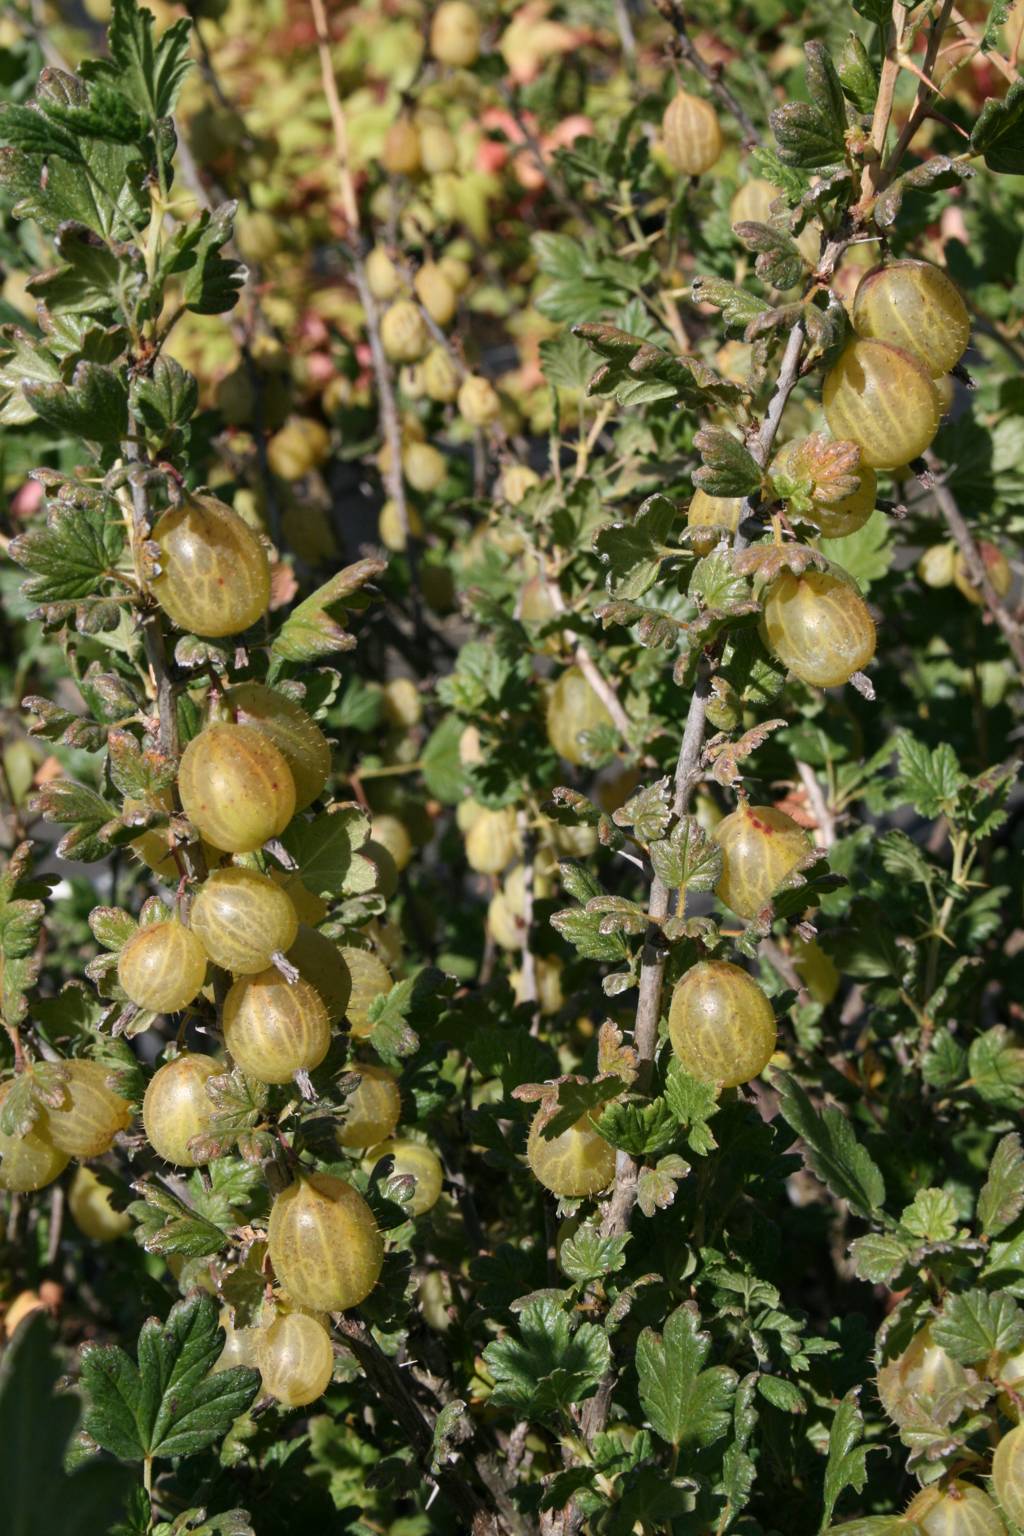 Agrest "Invicta" / Ribes grossularia "Invicta"